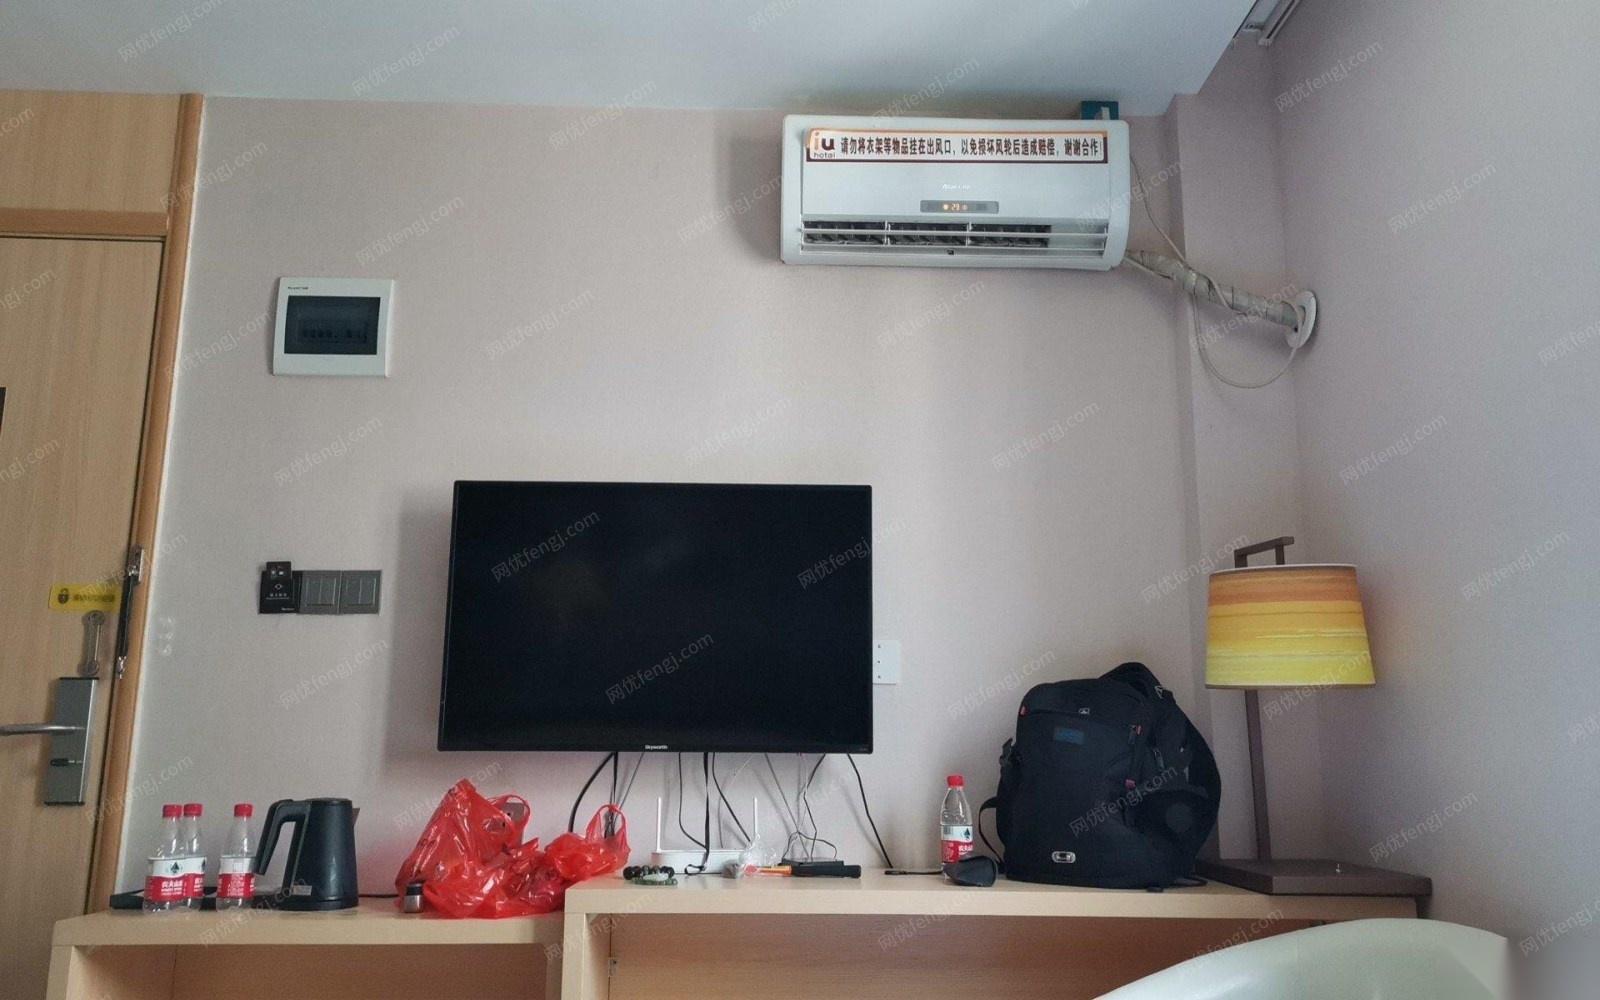 海南三亚酒店拆迁打包出售闲置76个房间的电视空调酒店用品 150000元